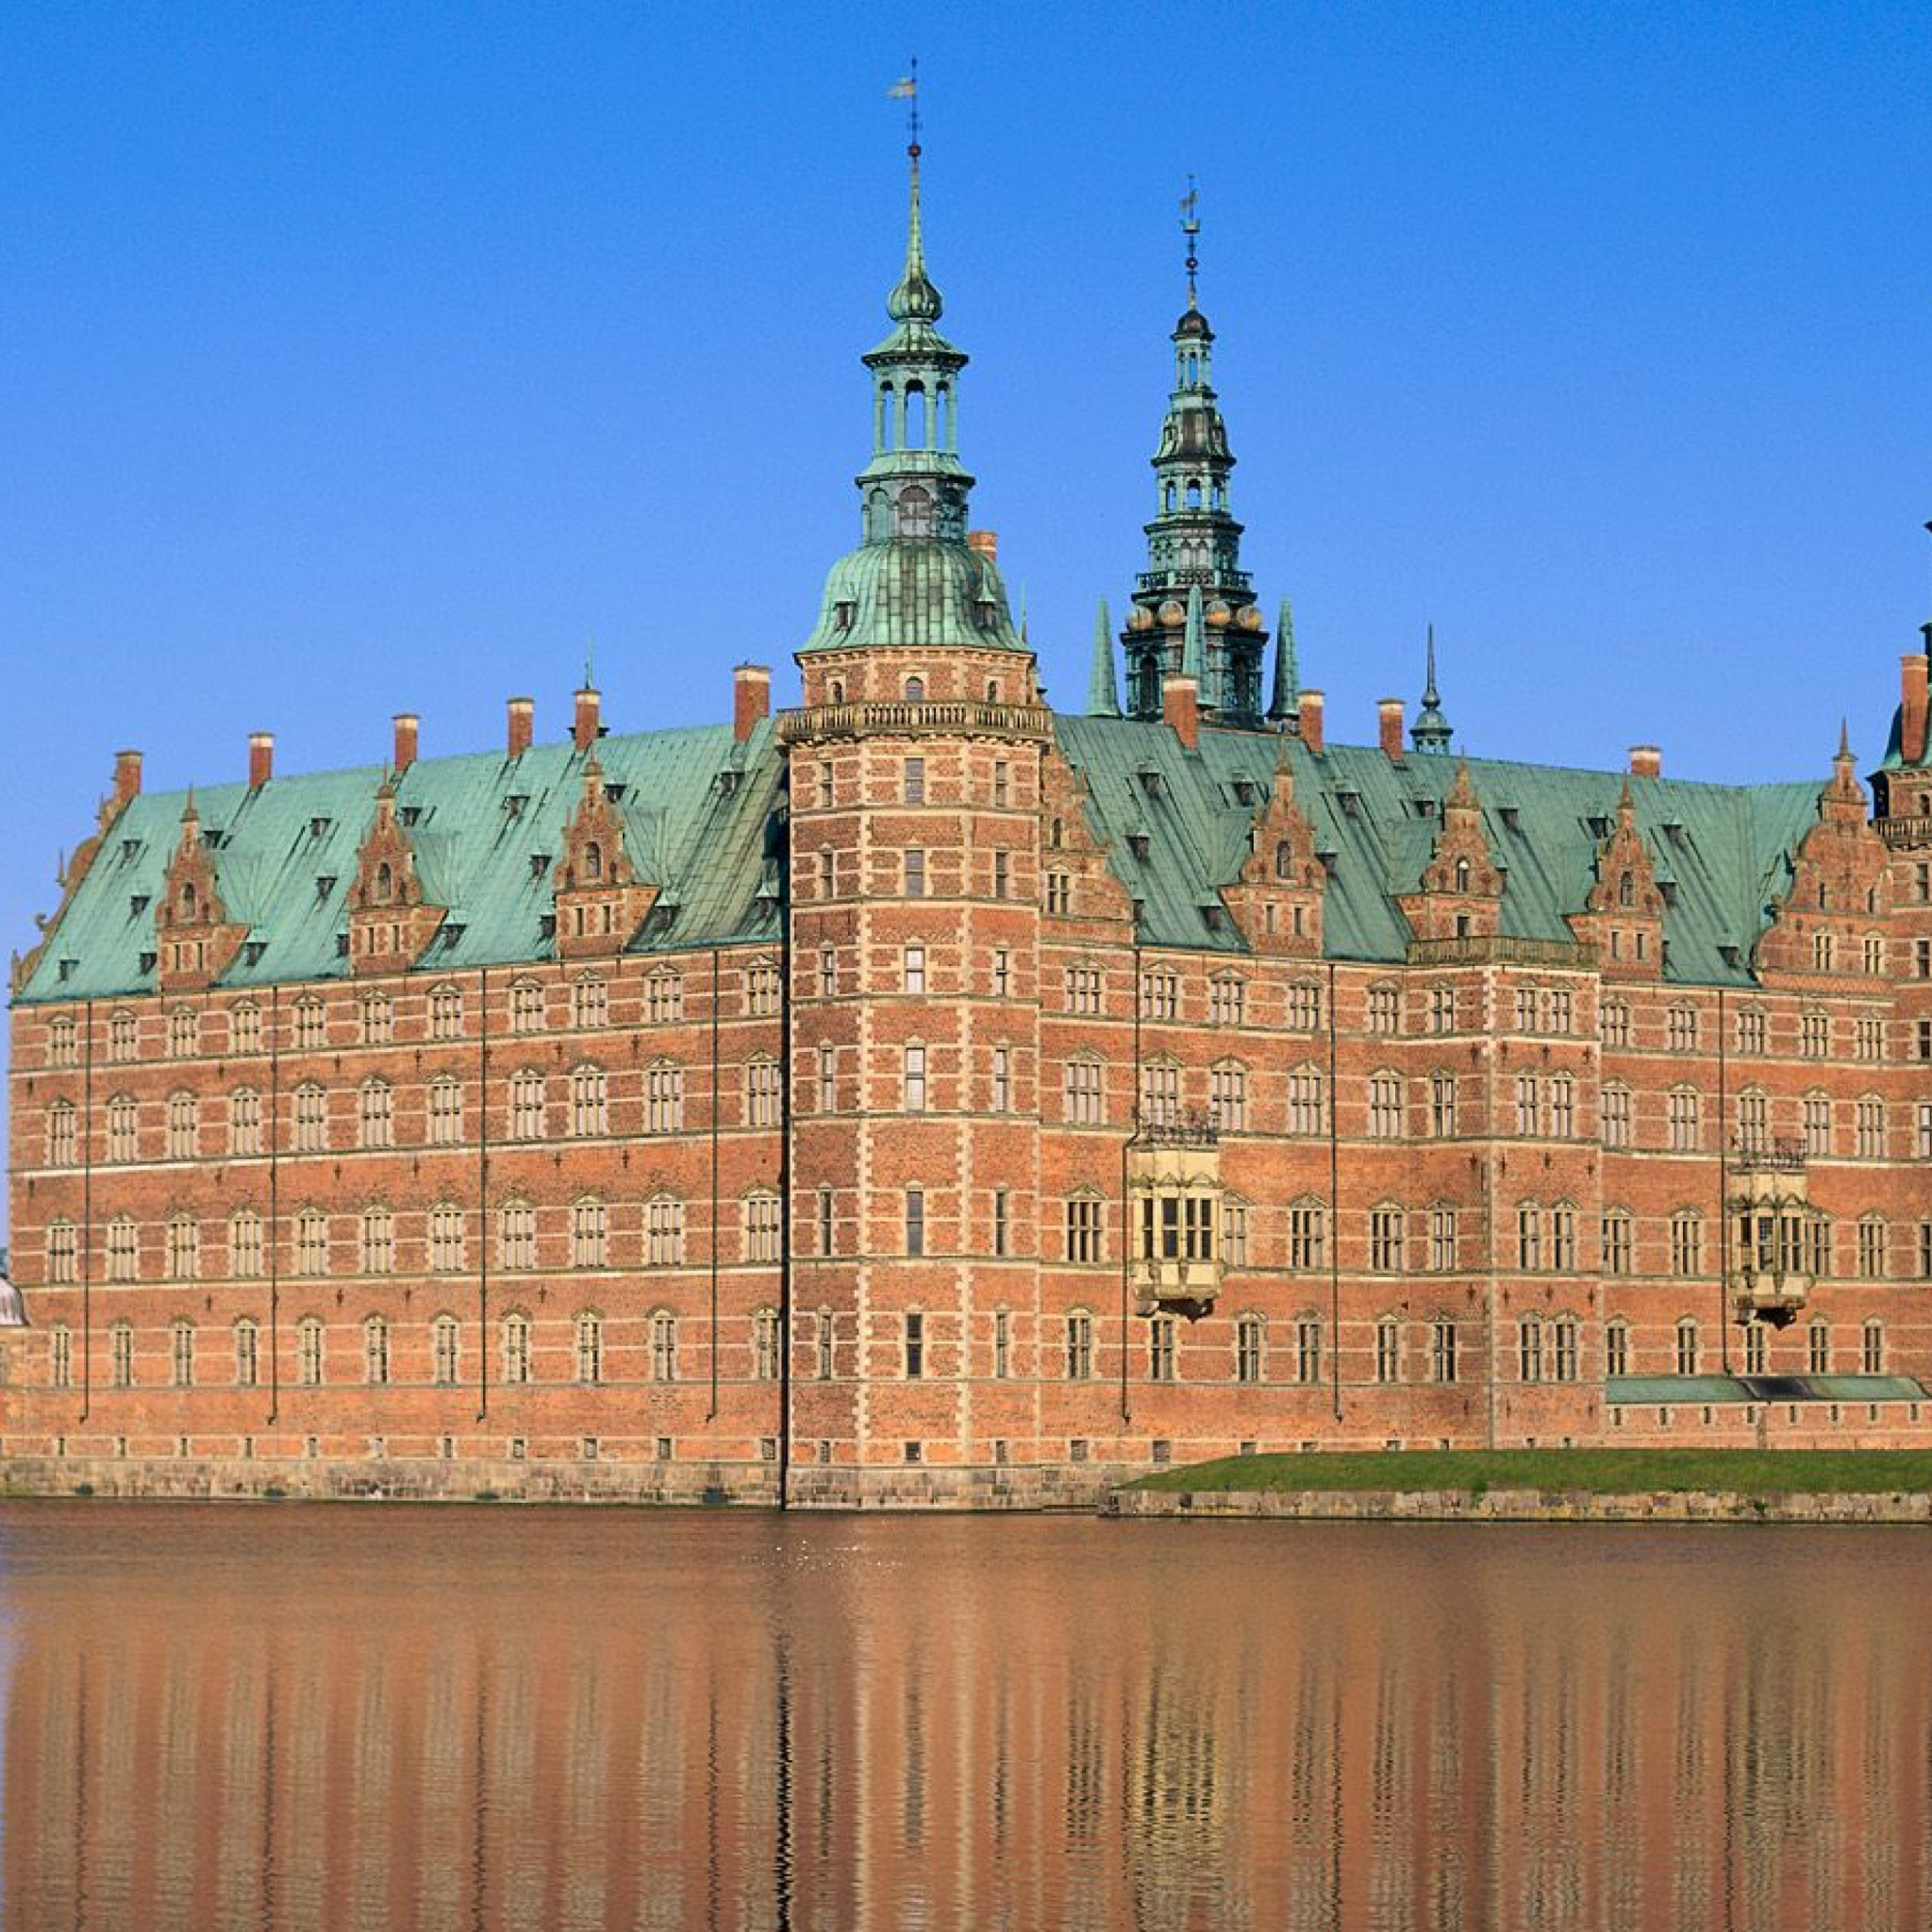 Достопримечательности каждой страны. Дворец Фредериксборг Копенгаген. Замок Фредериксборг (г. Хиллеред).